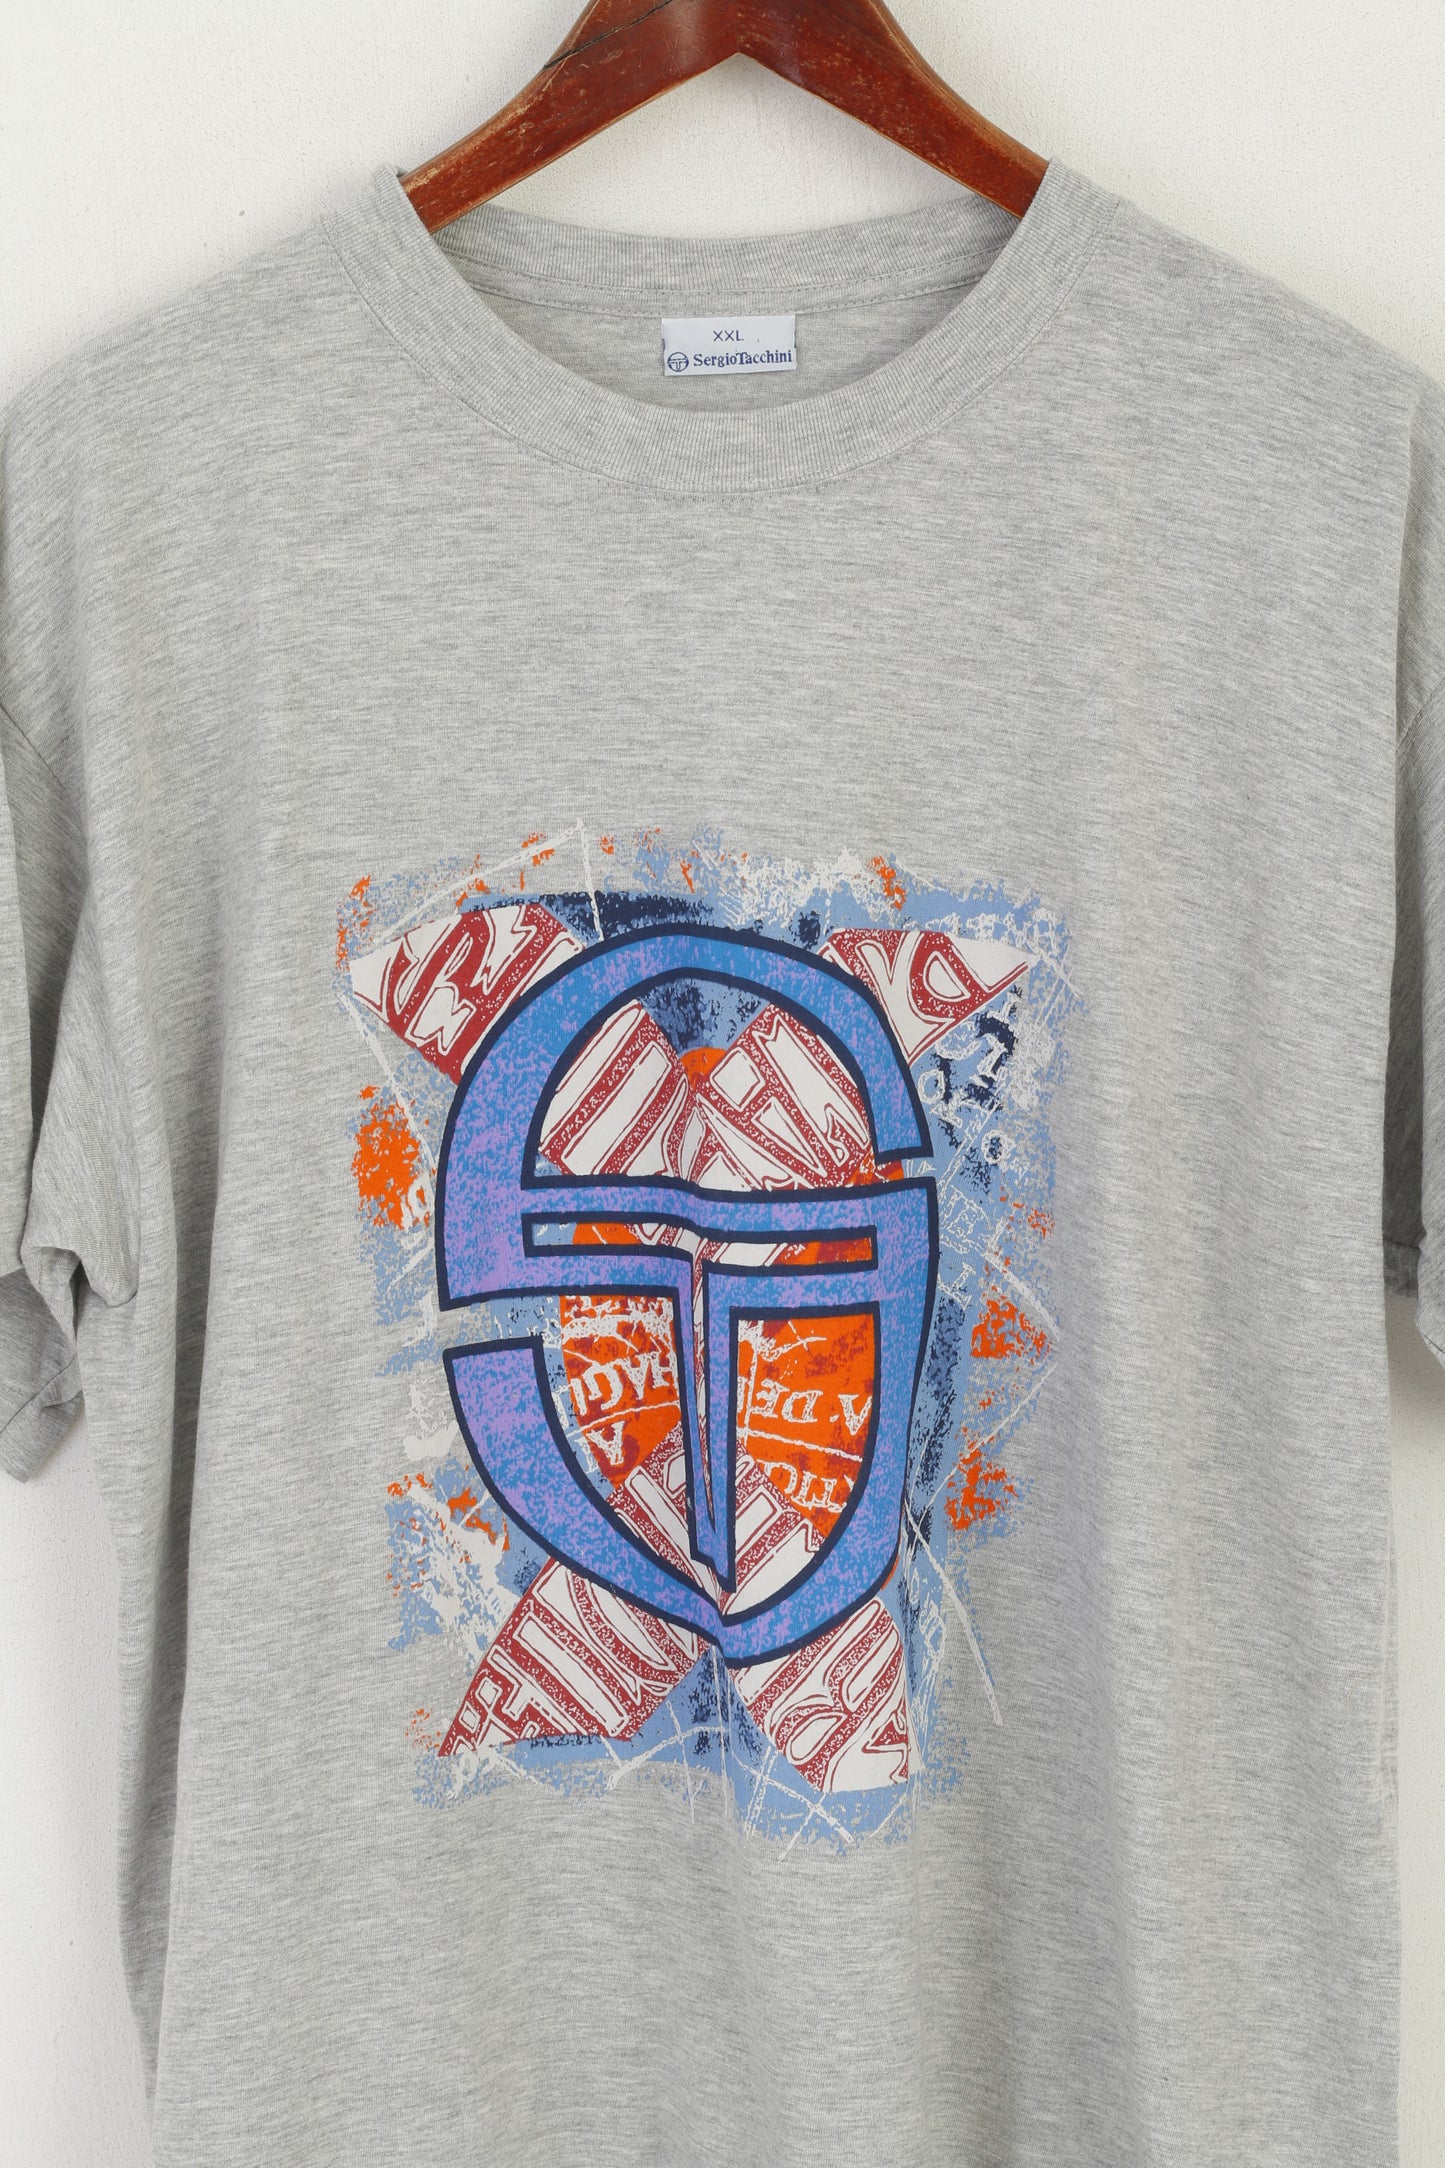 T-shirt Sergio Tacchini da uomo XXL in cotone grigio, lunga, alta, con logo grafico